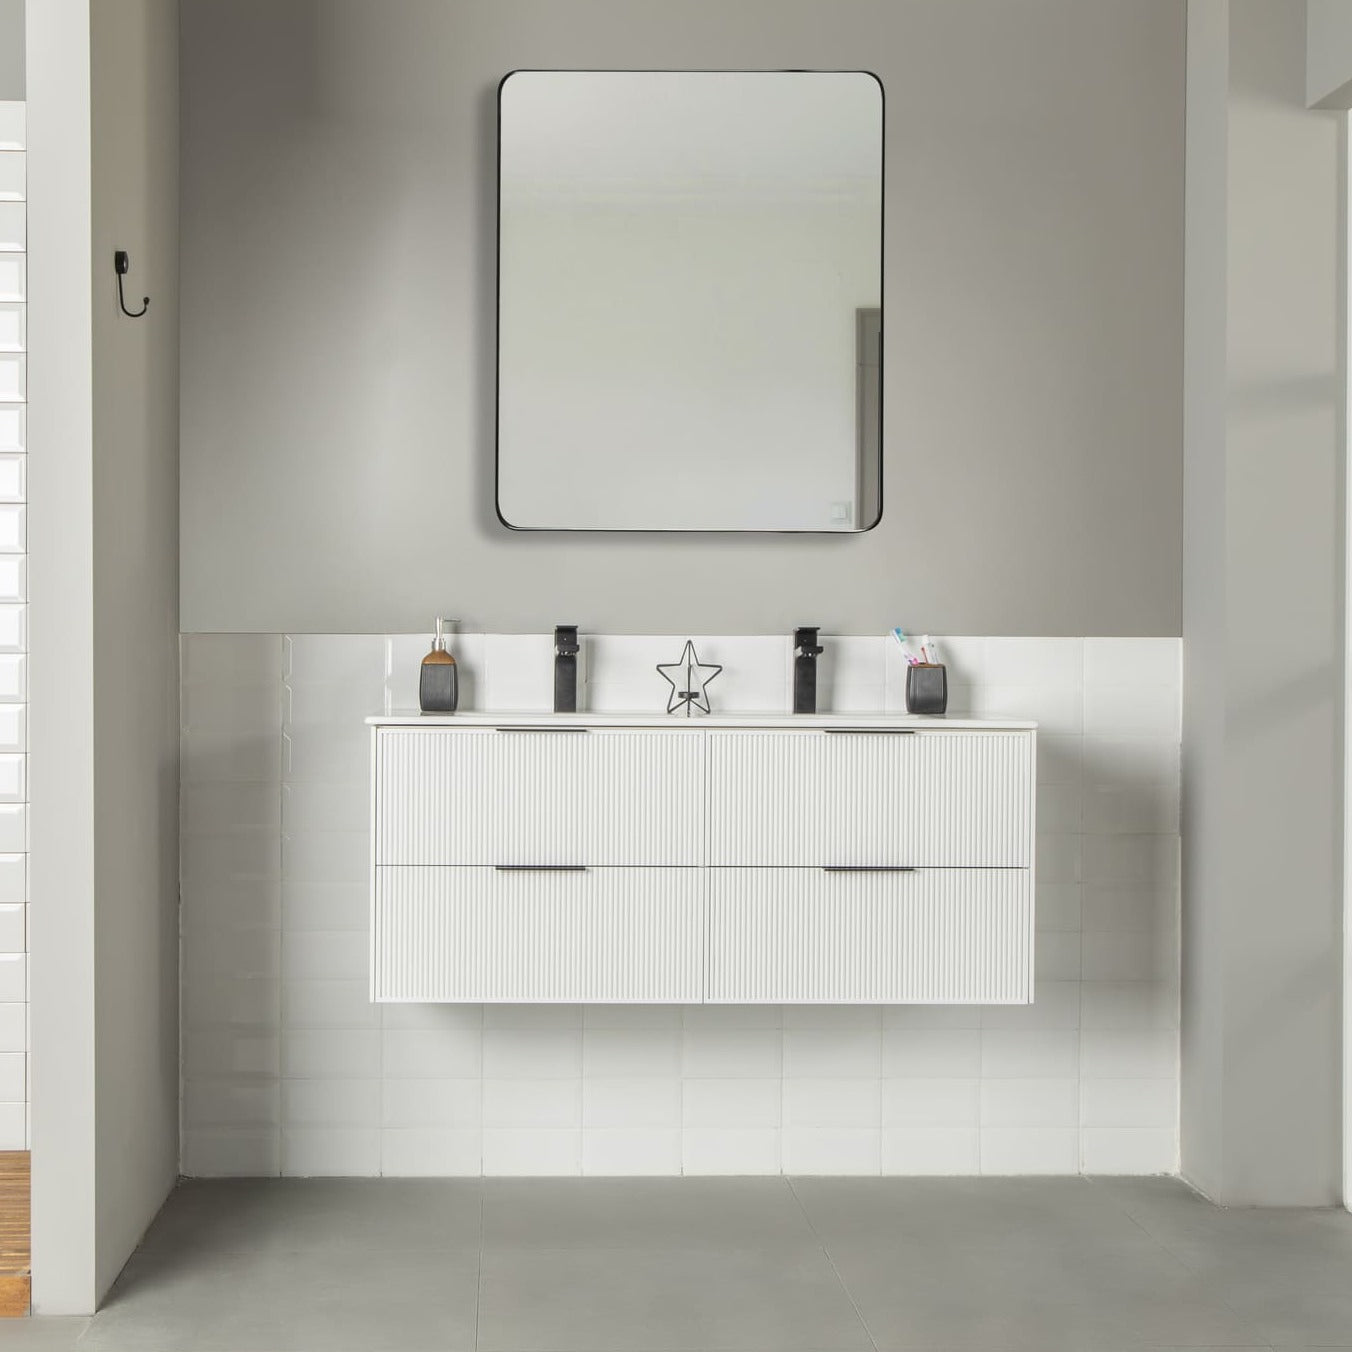 Sorrento Bathroom Vanity Homelero 48" #size_48" #color_white #hardware_black